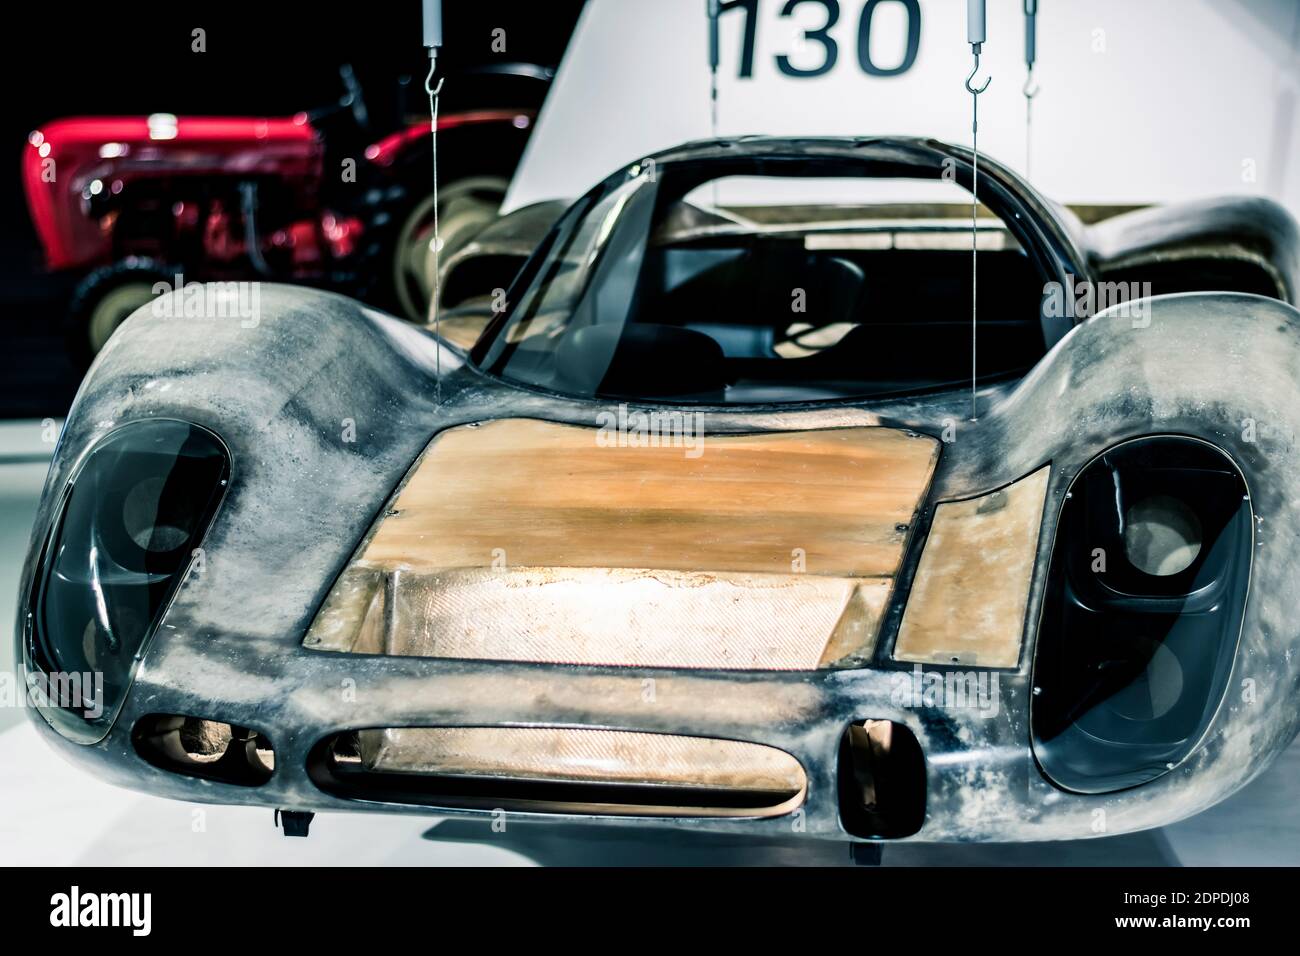 STUTTGART, Deutschland 6. März 2020: Der Porsche 908 war ein Rennwagen von Porsche, der 1968 vorgestellt wurde Stockfoto